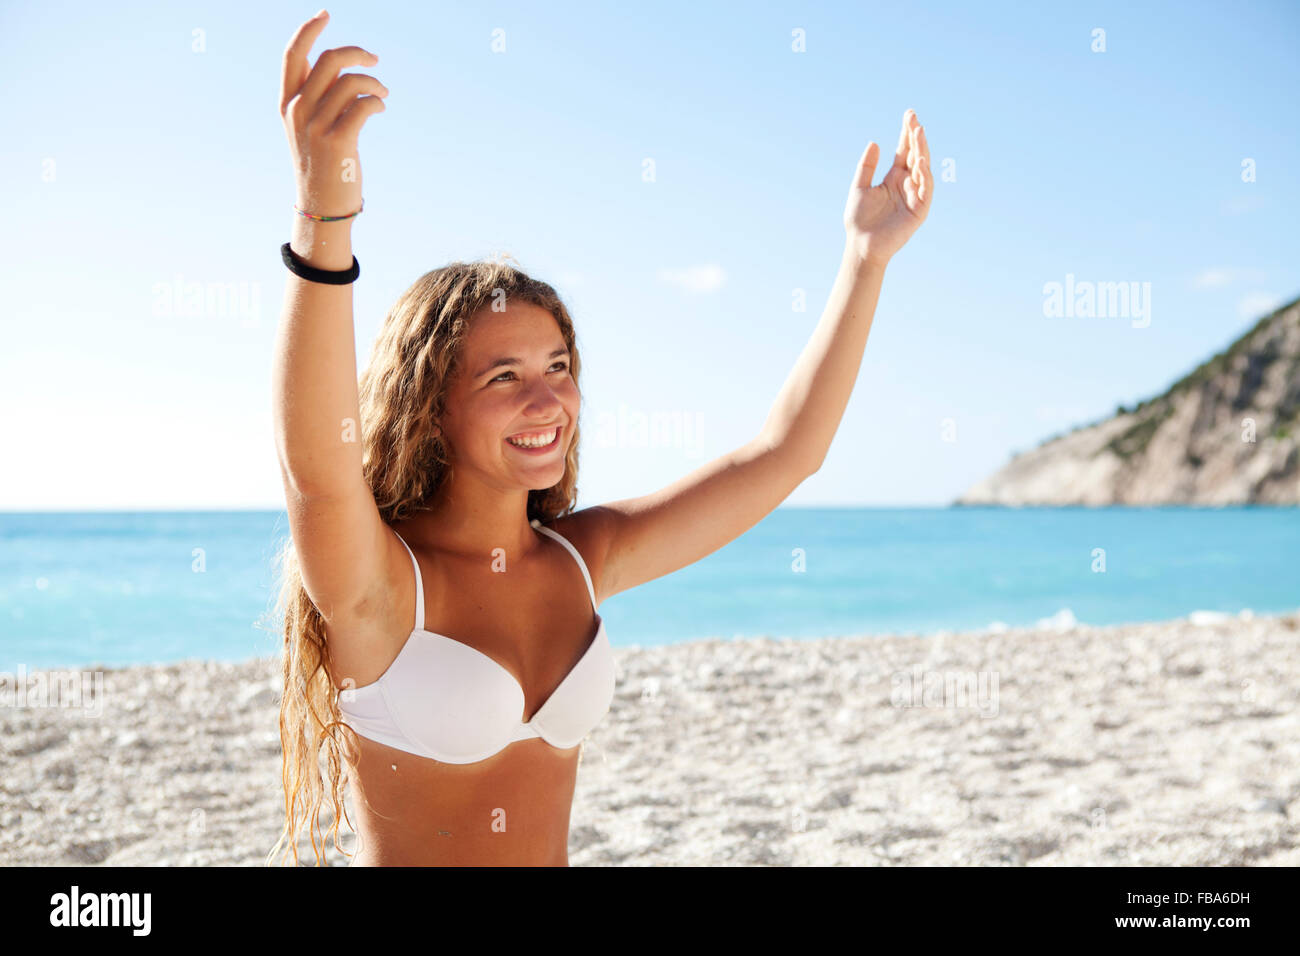 Junge blonde Mädchen lächelnd offenen Armen auf einem weißen Strand tragen weiße Bikini. Myrtos Strand Lixouri, Kefalonia, Ionische Inseln Griechenland Stockfoto